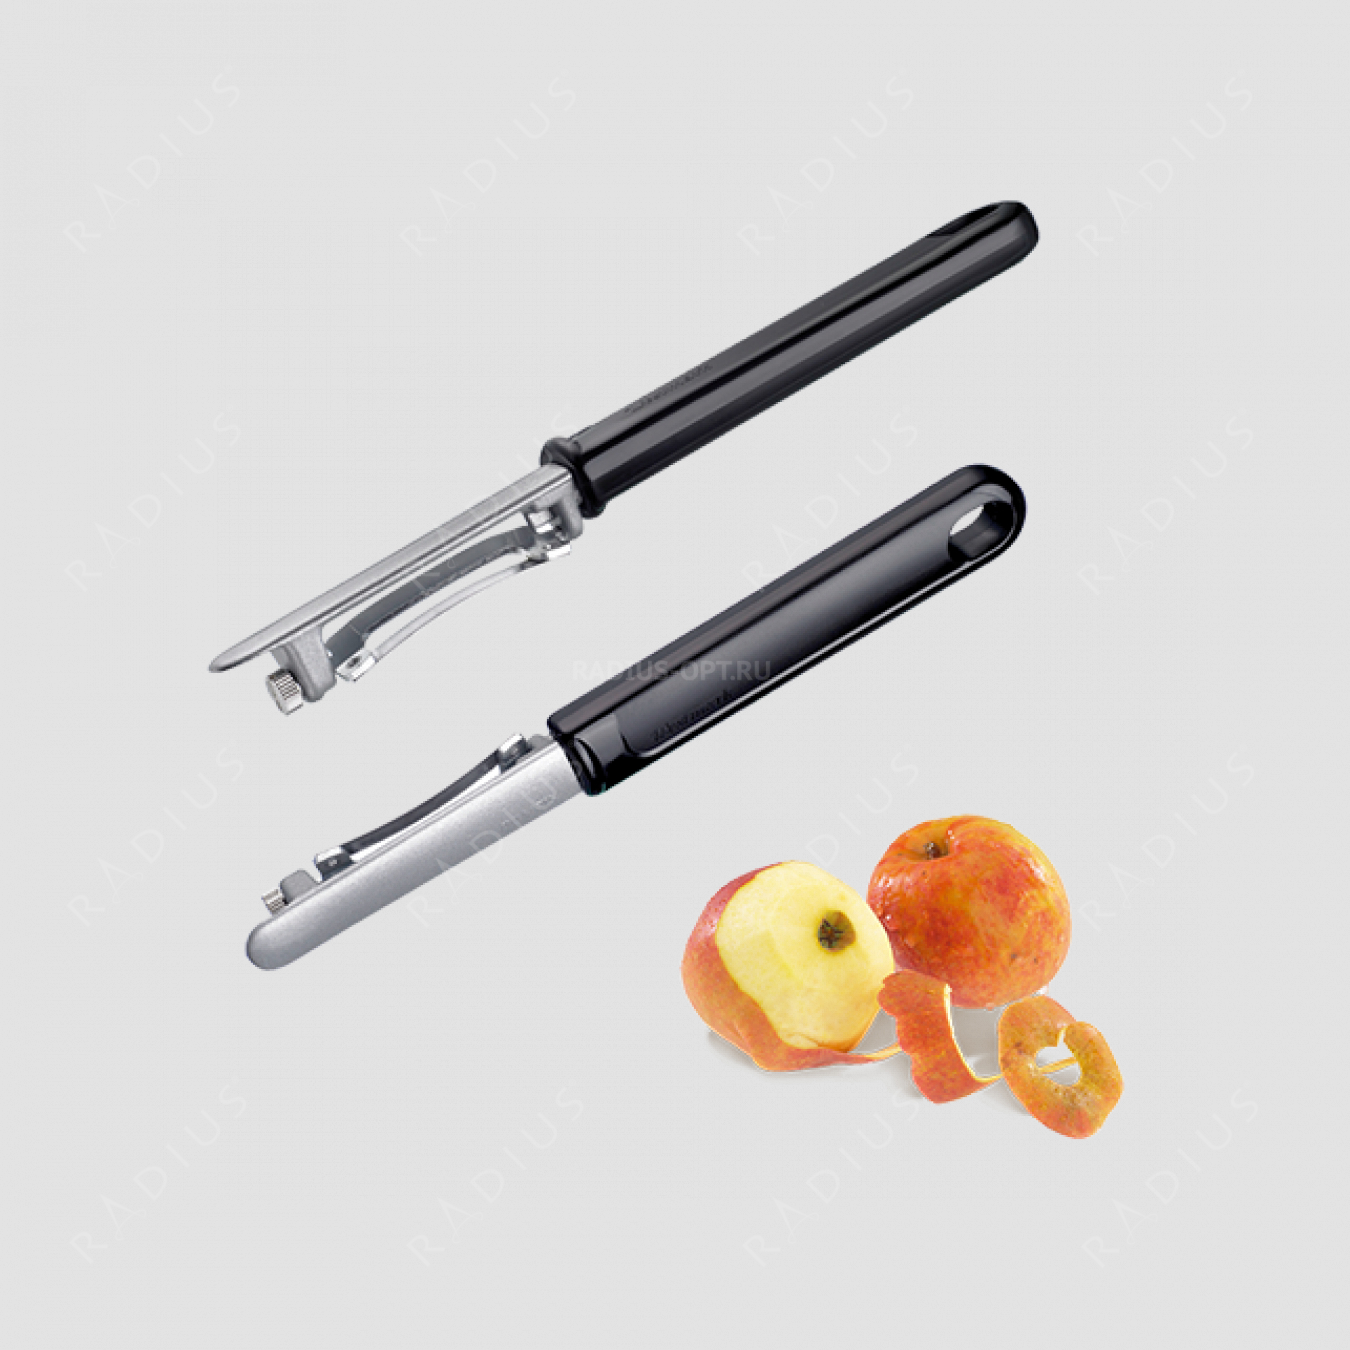 Нож для чистки овощей и фруктов, с плавающим лезвием, алюминий/сталь, серия Coated aluminium, Westmark, Германия